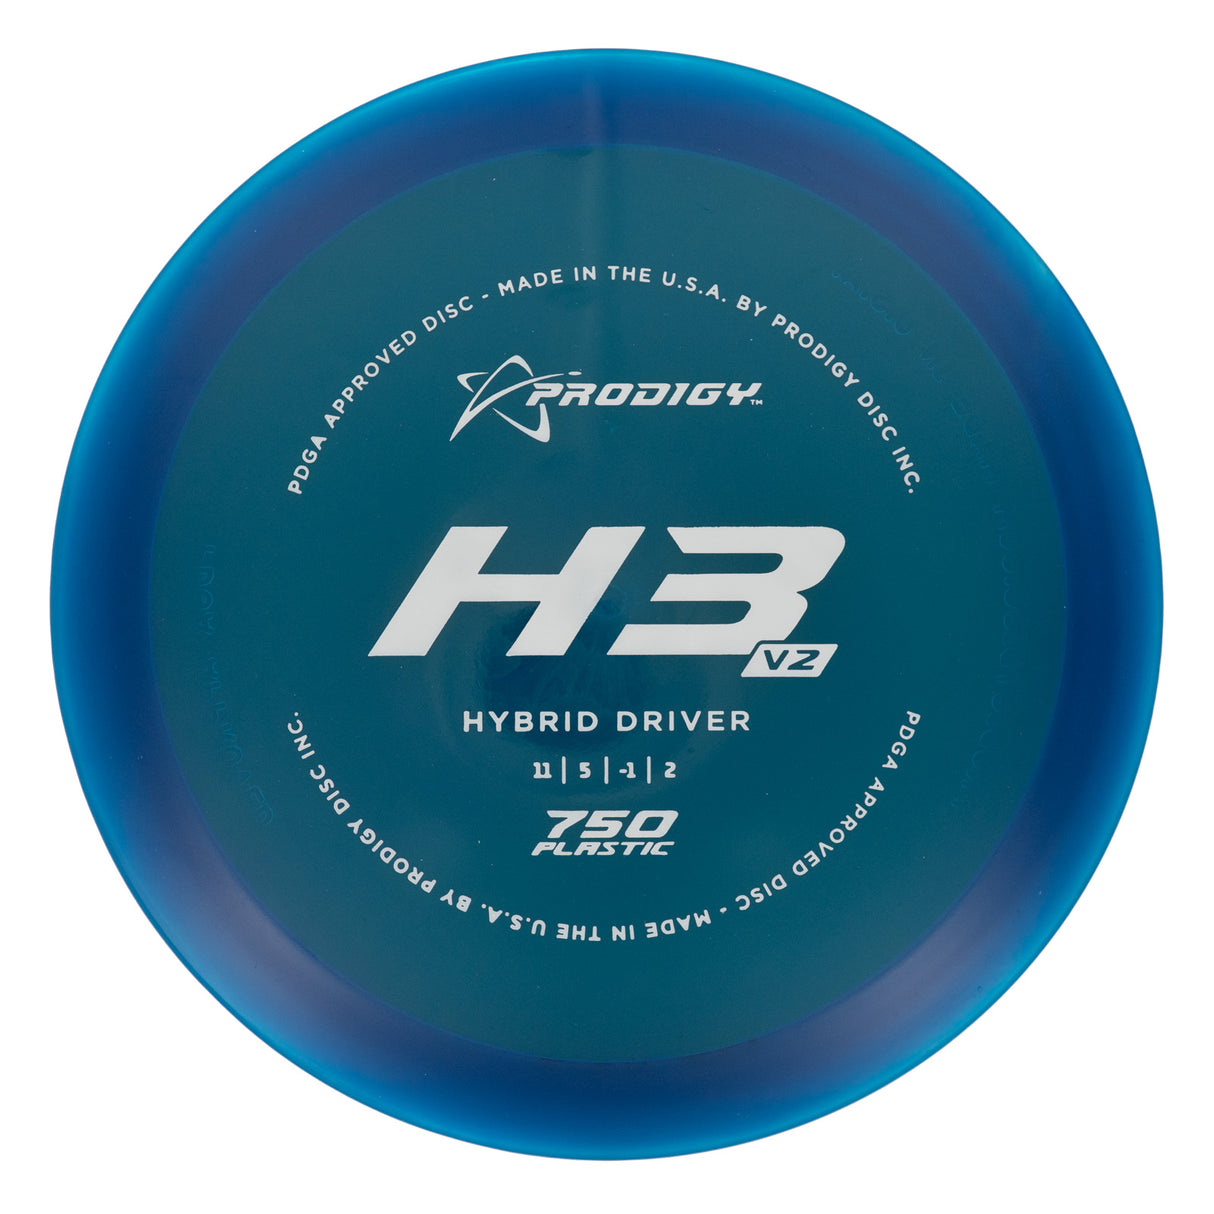 Prodigy H3 V2 - 750 175g | Style 0002